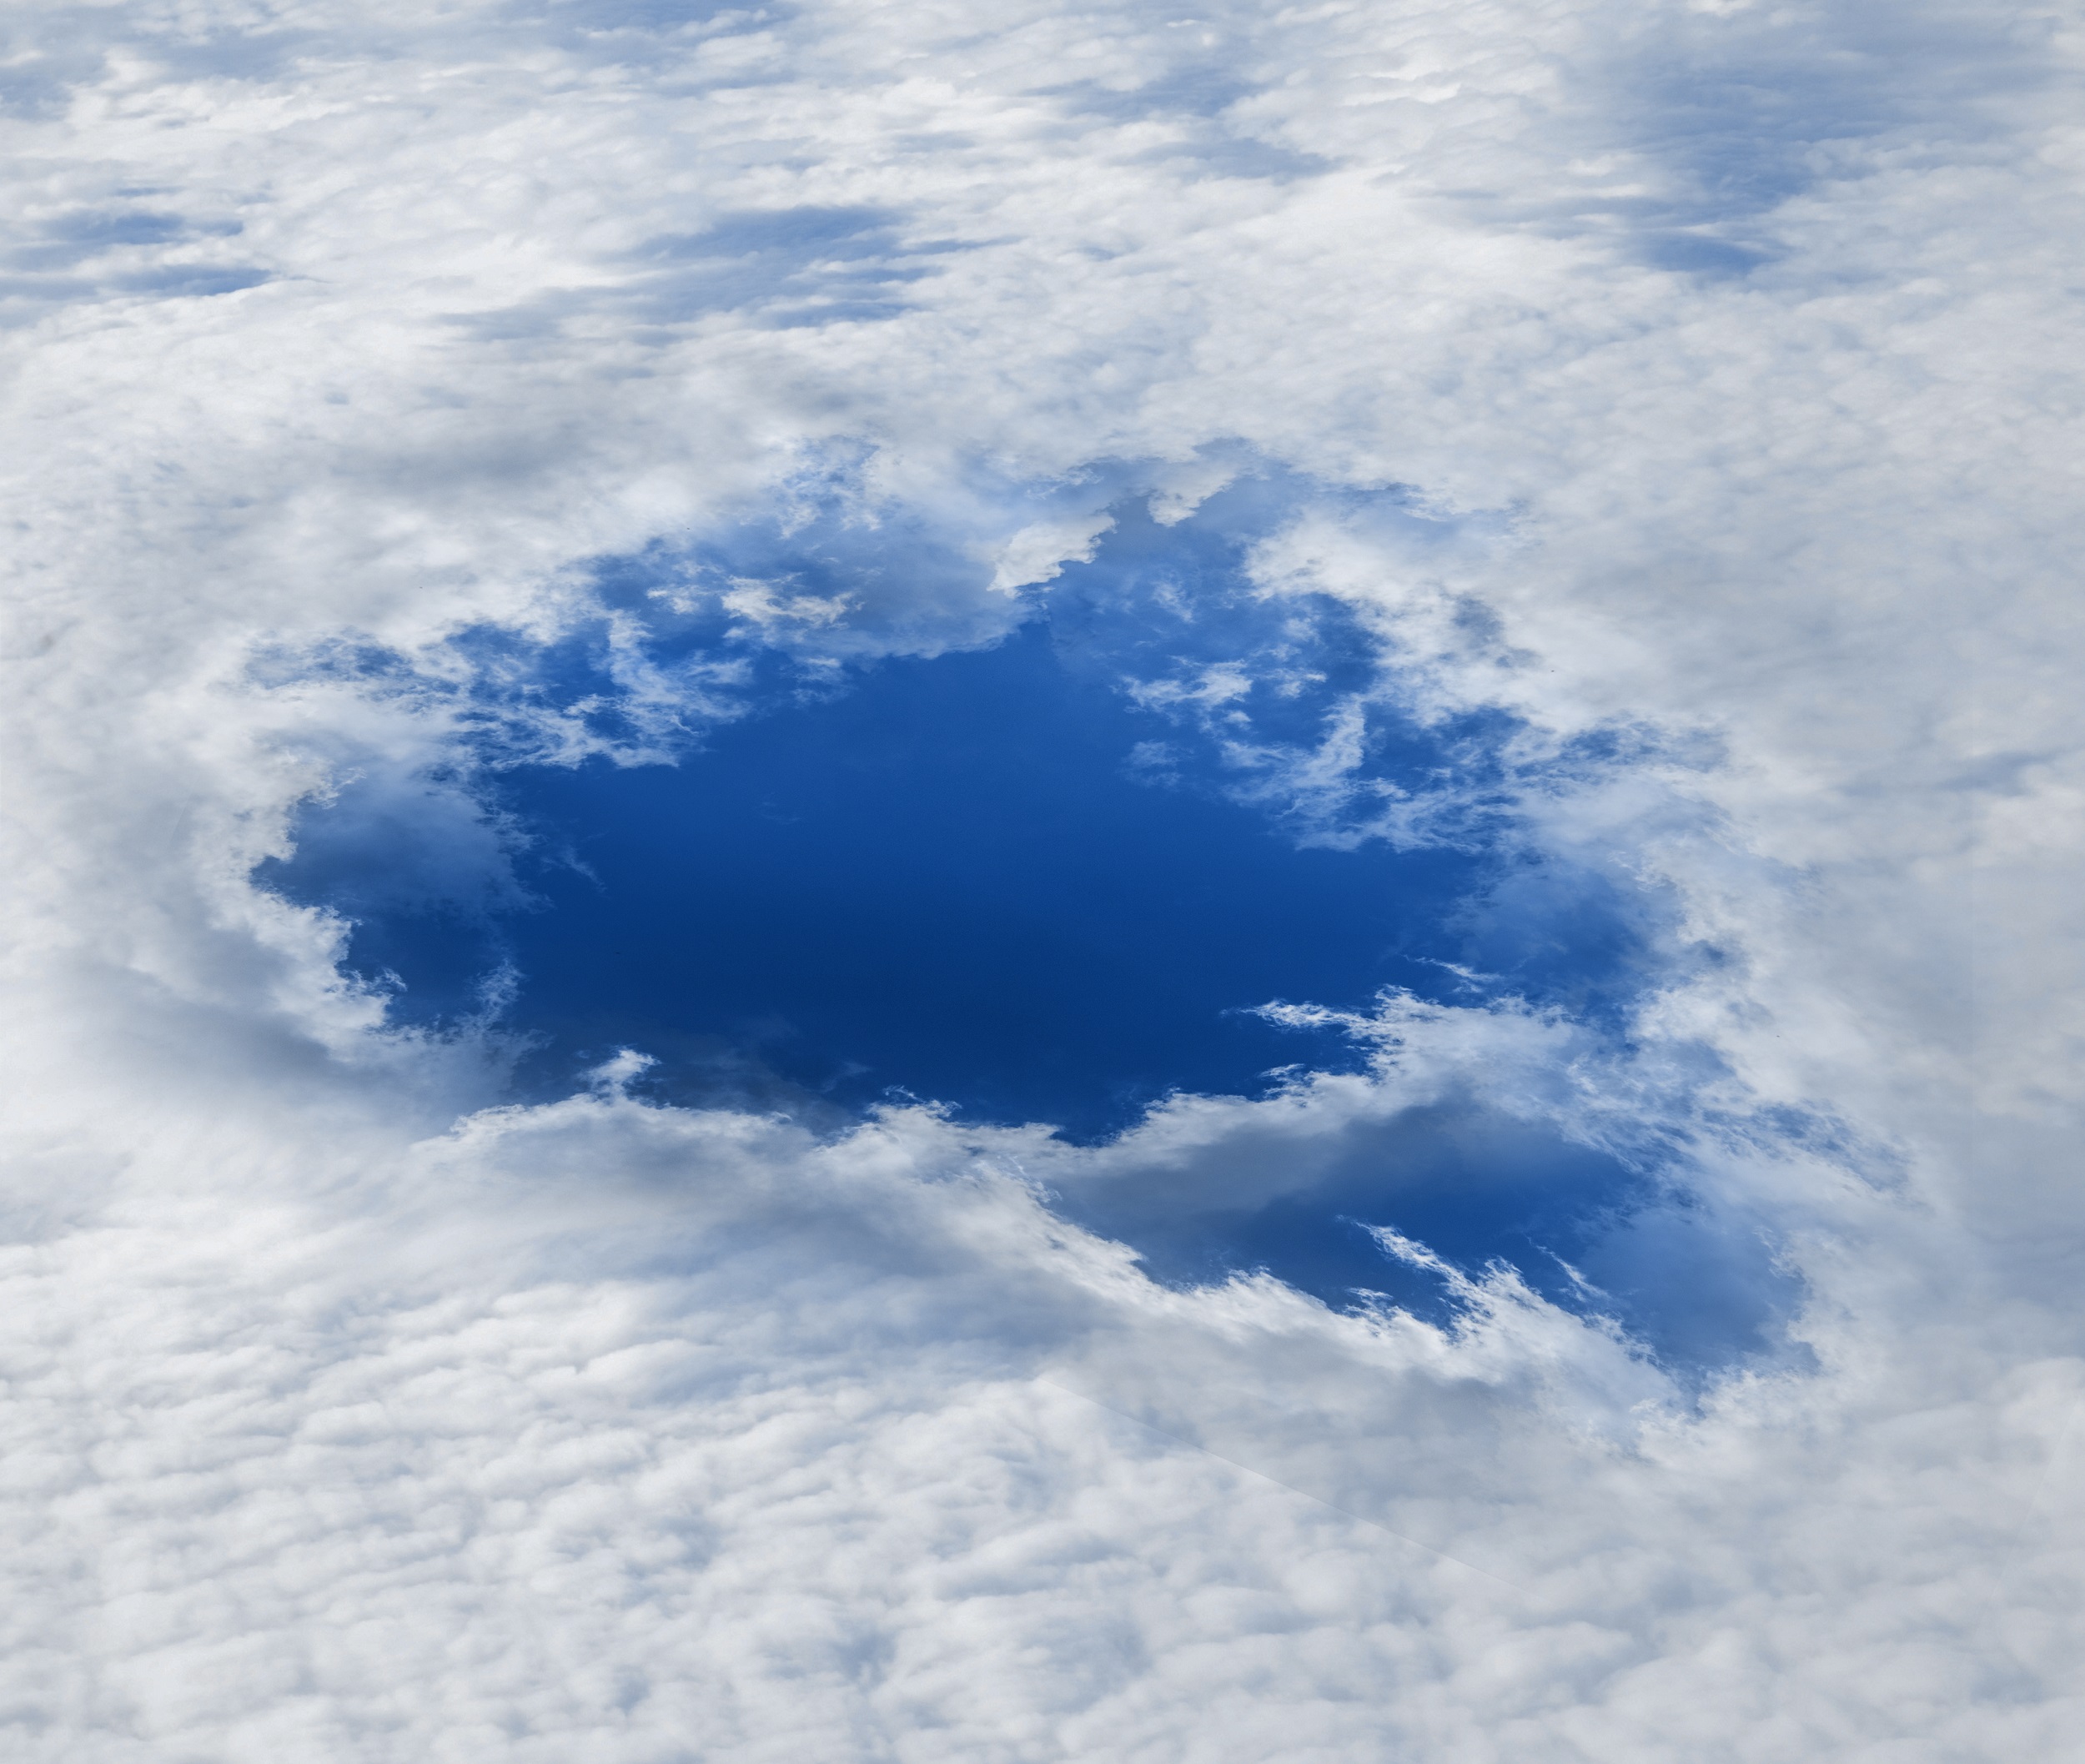 Le skypunch est un nuage très rare qui donne l'impression que le ciel s'est ouvert devant nous : il est inoffensif. © Butch, Adobe Stock